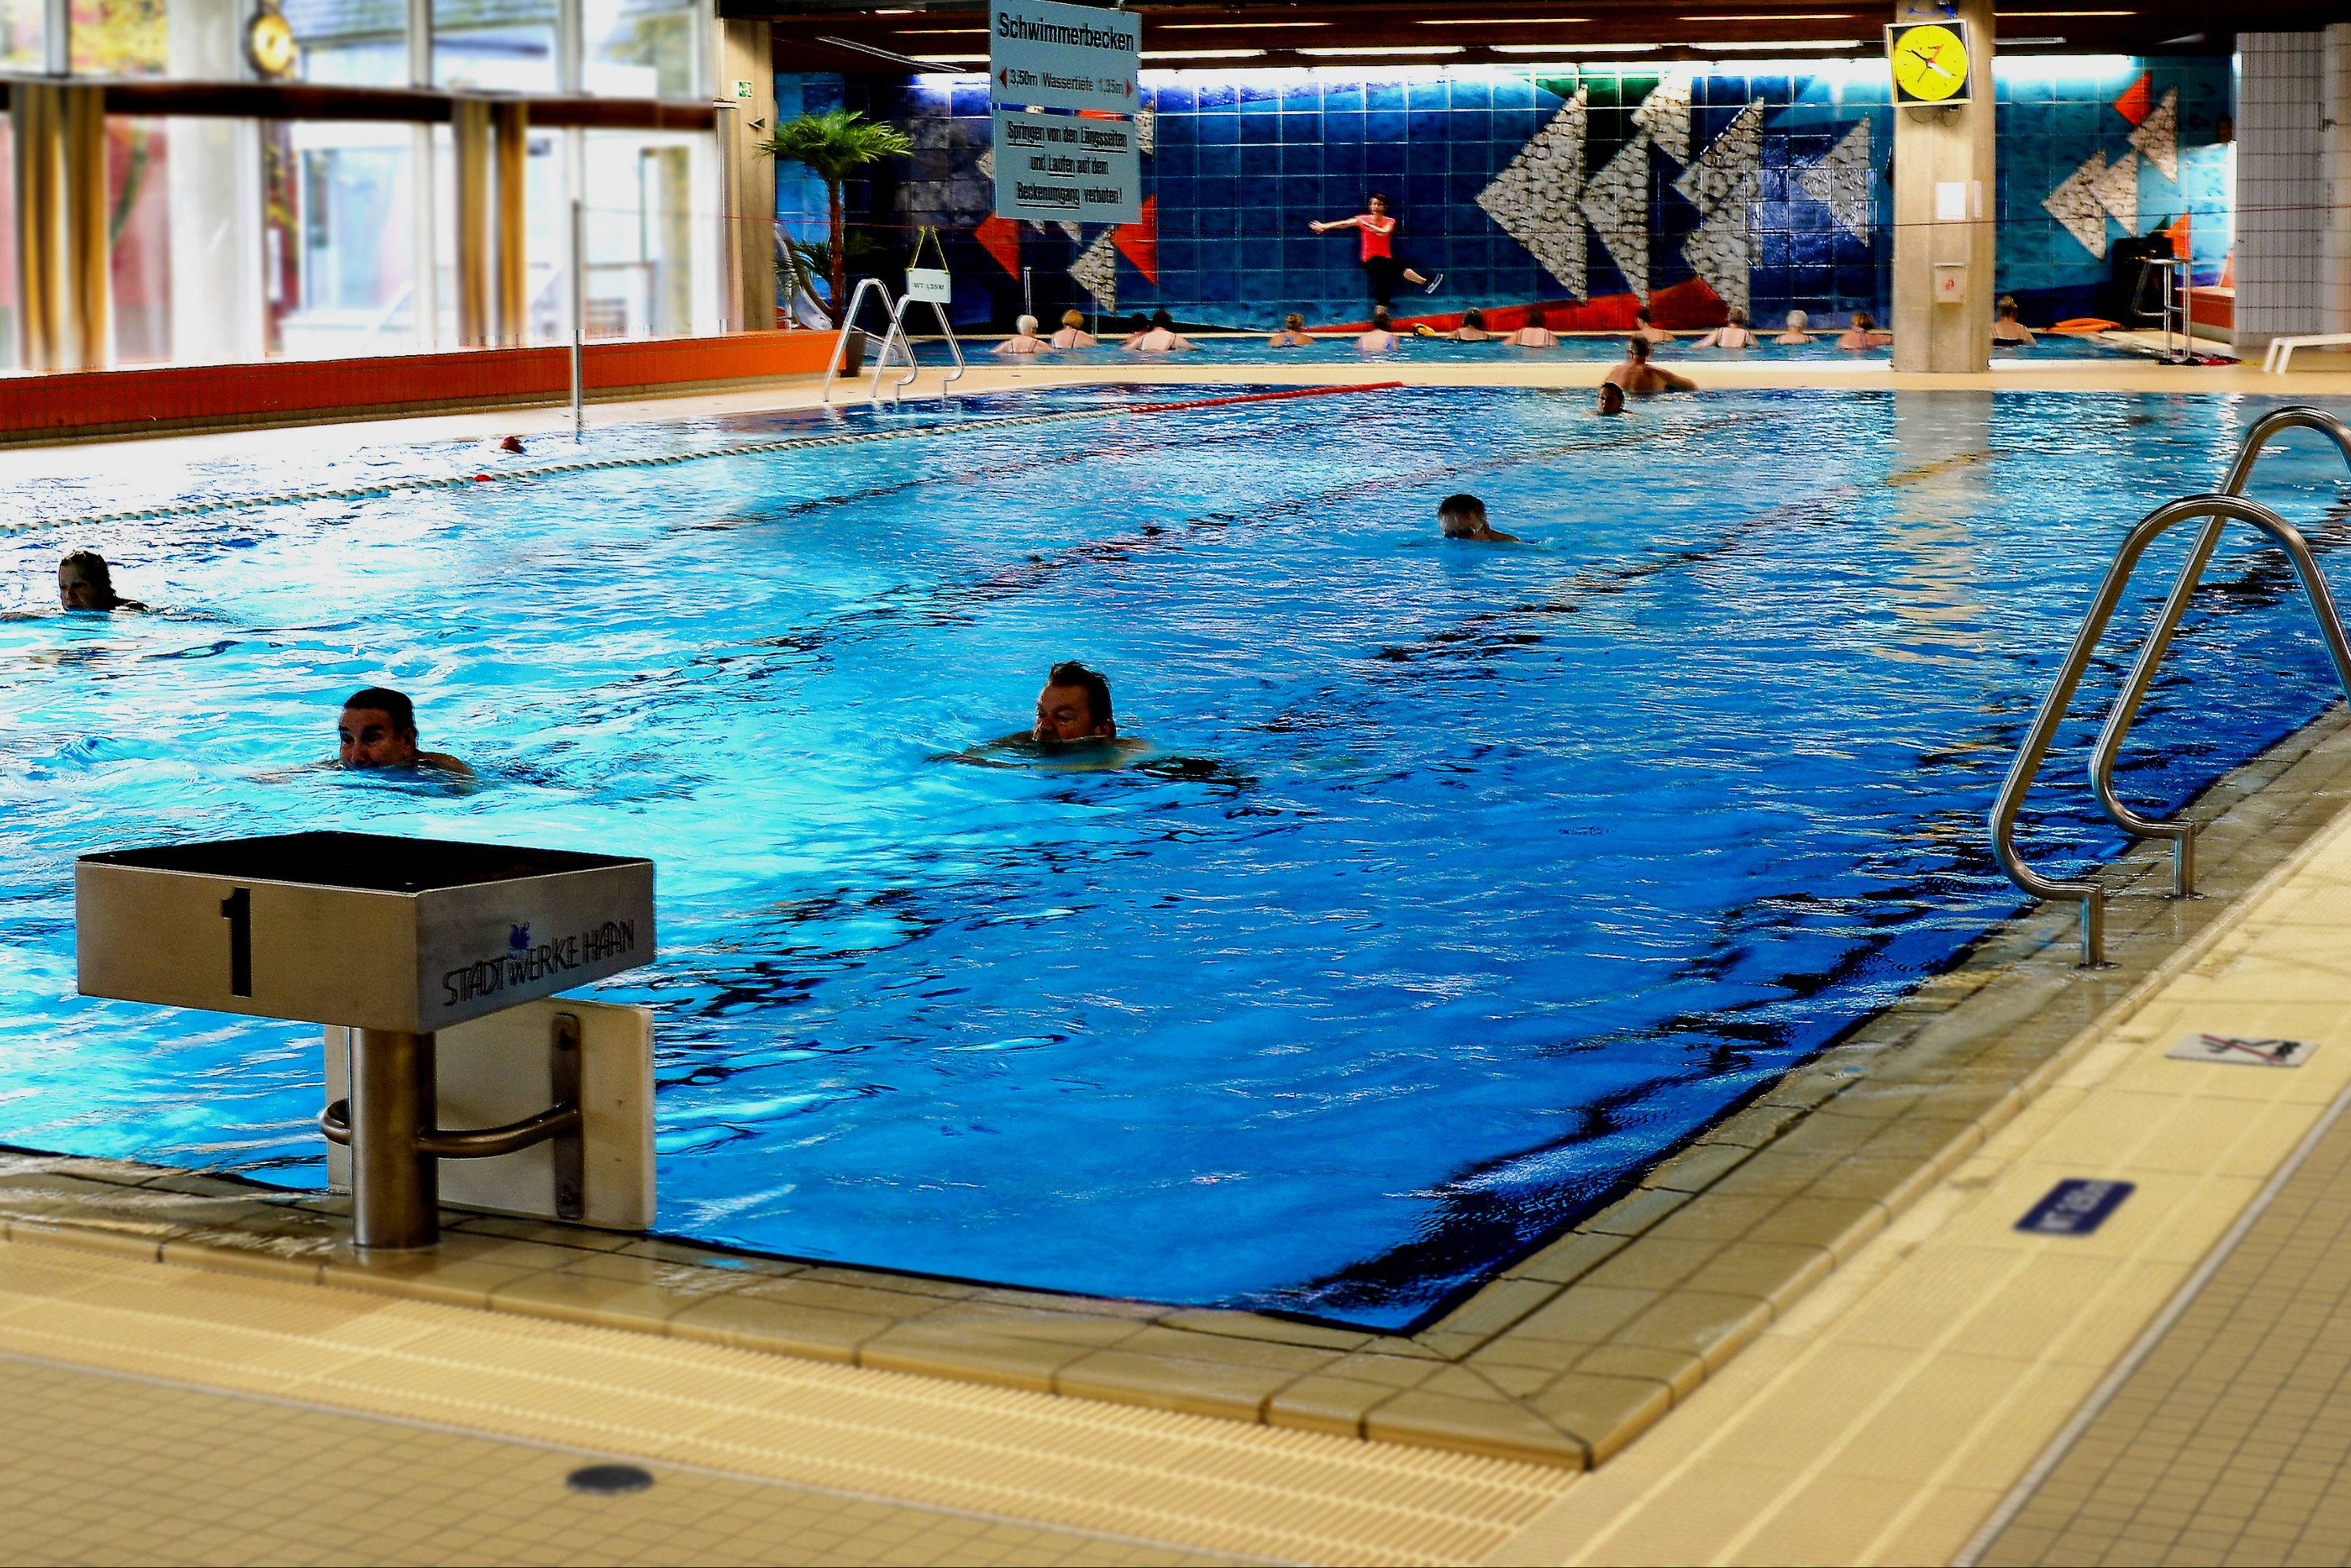 Stadtwerke Haan GmbH - Schwimm- und Sportbad